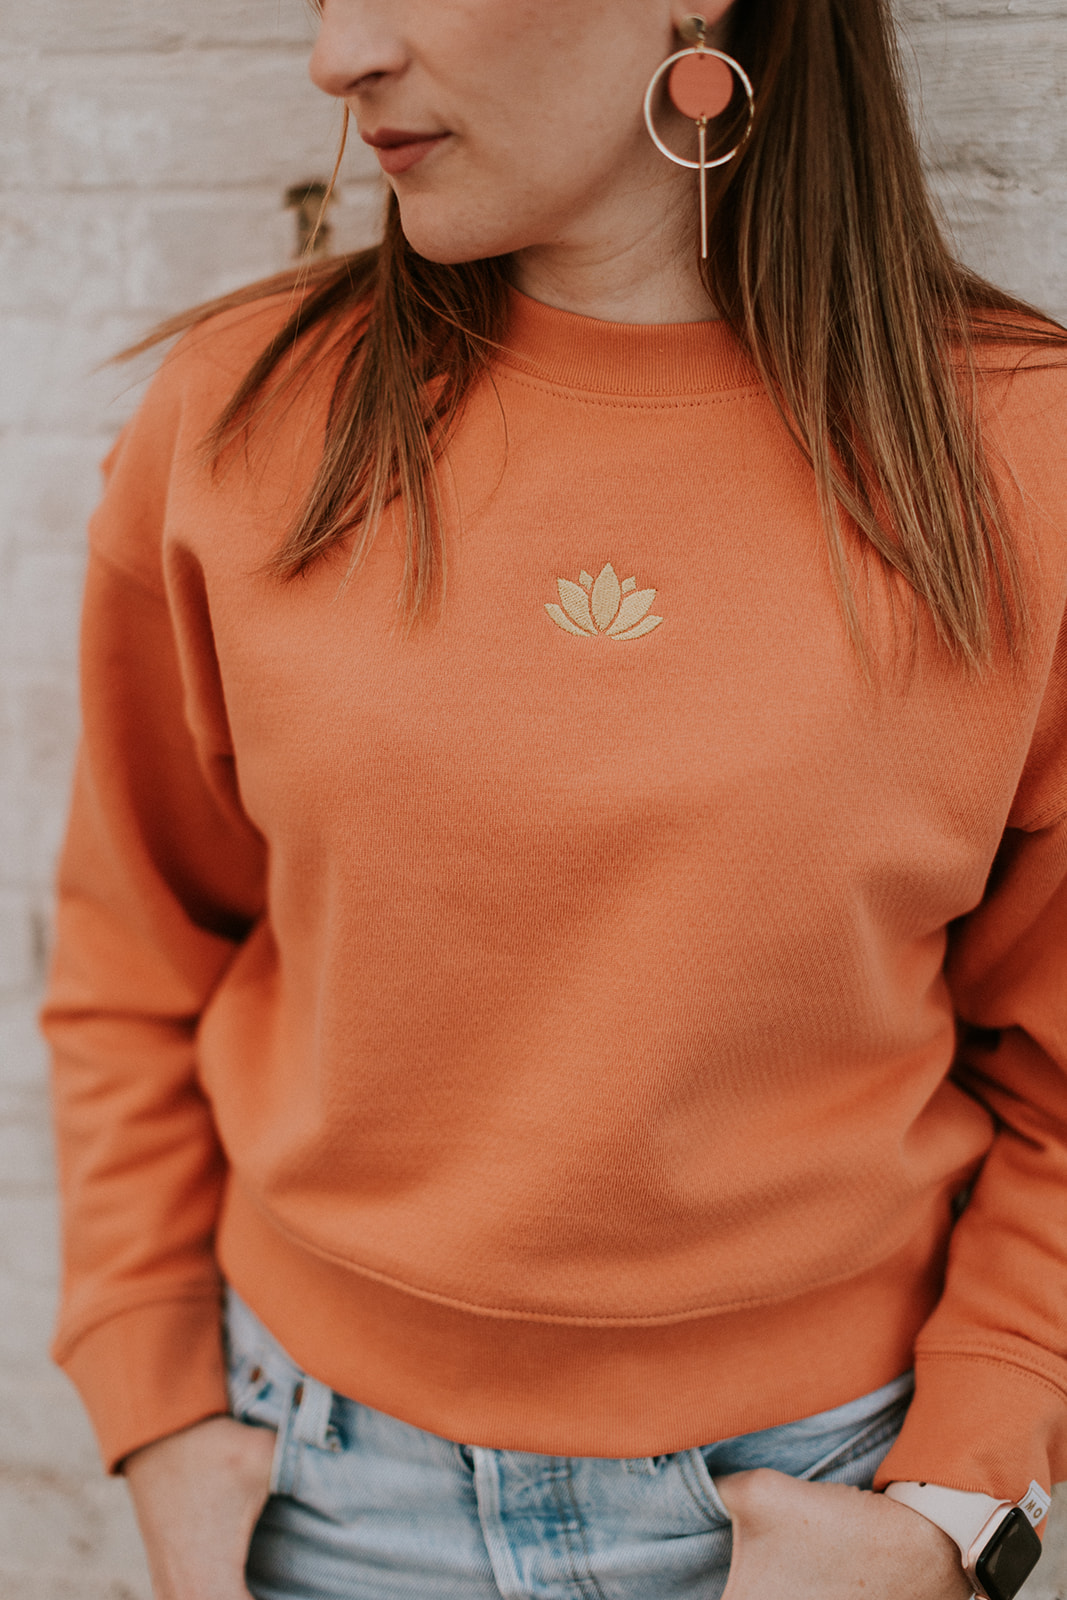 Lotus cropped sweater - Mangos on Monday